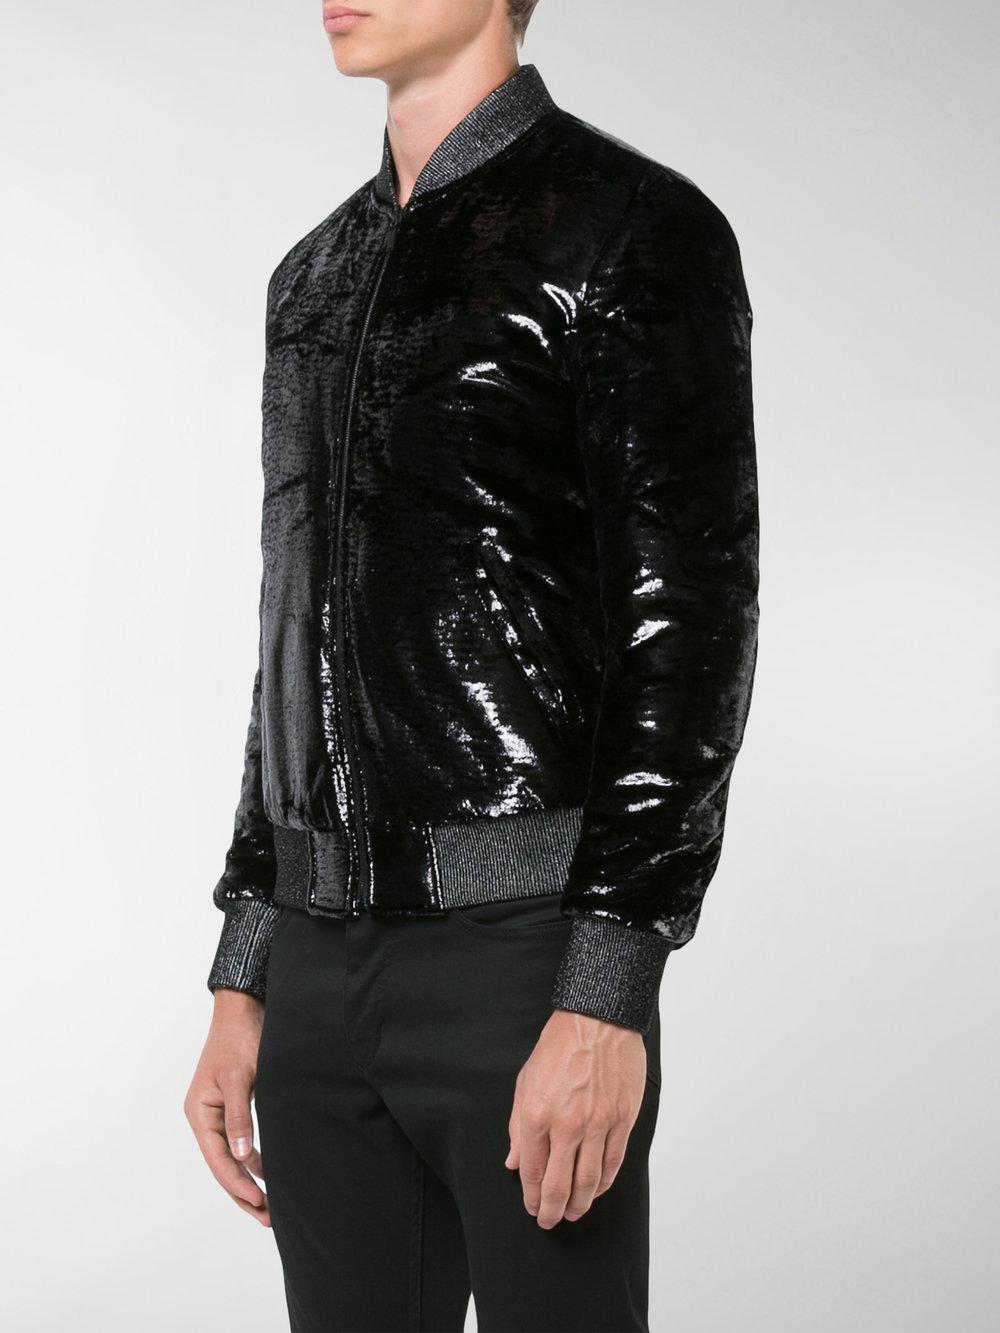 Saint Laurent Silk Shiny Bomber Jacket in Black for Men - Lyst